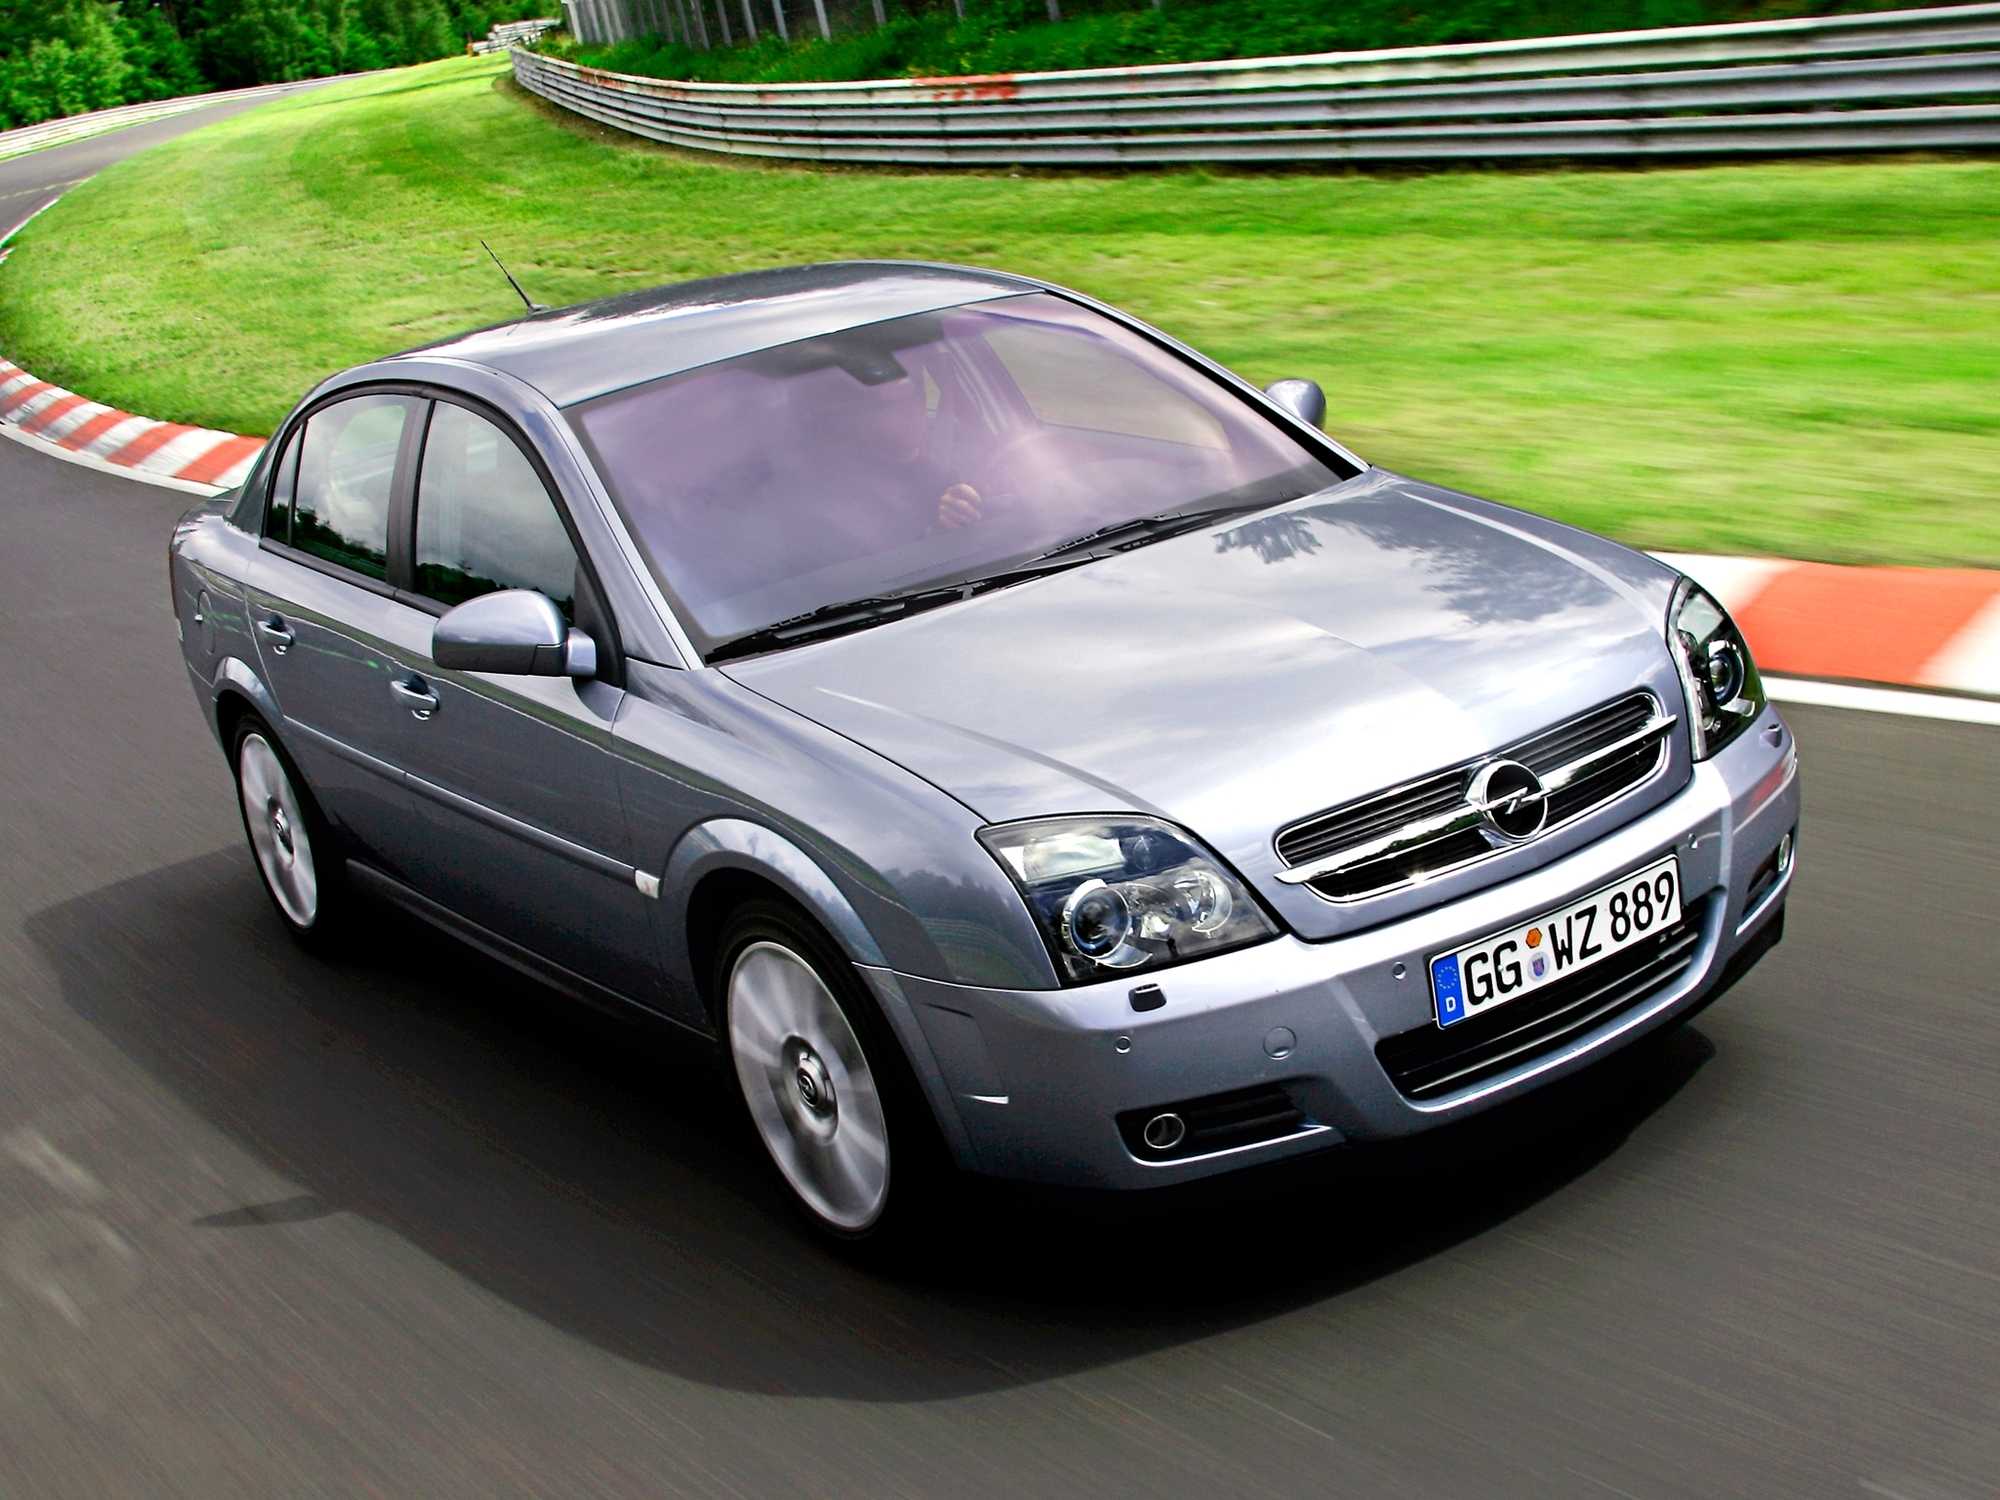 Opel Vectra c 2002. Опель Вектра ц 2002. Опель Вектра с 2008 2.2. Опель Вектра с 2002 2.2.